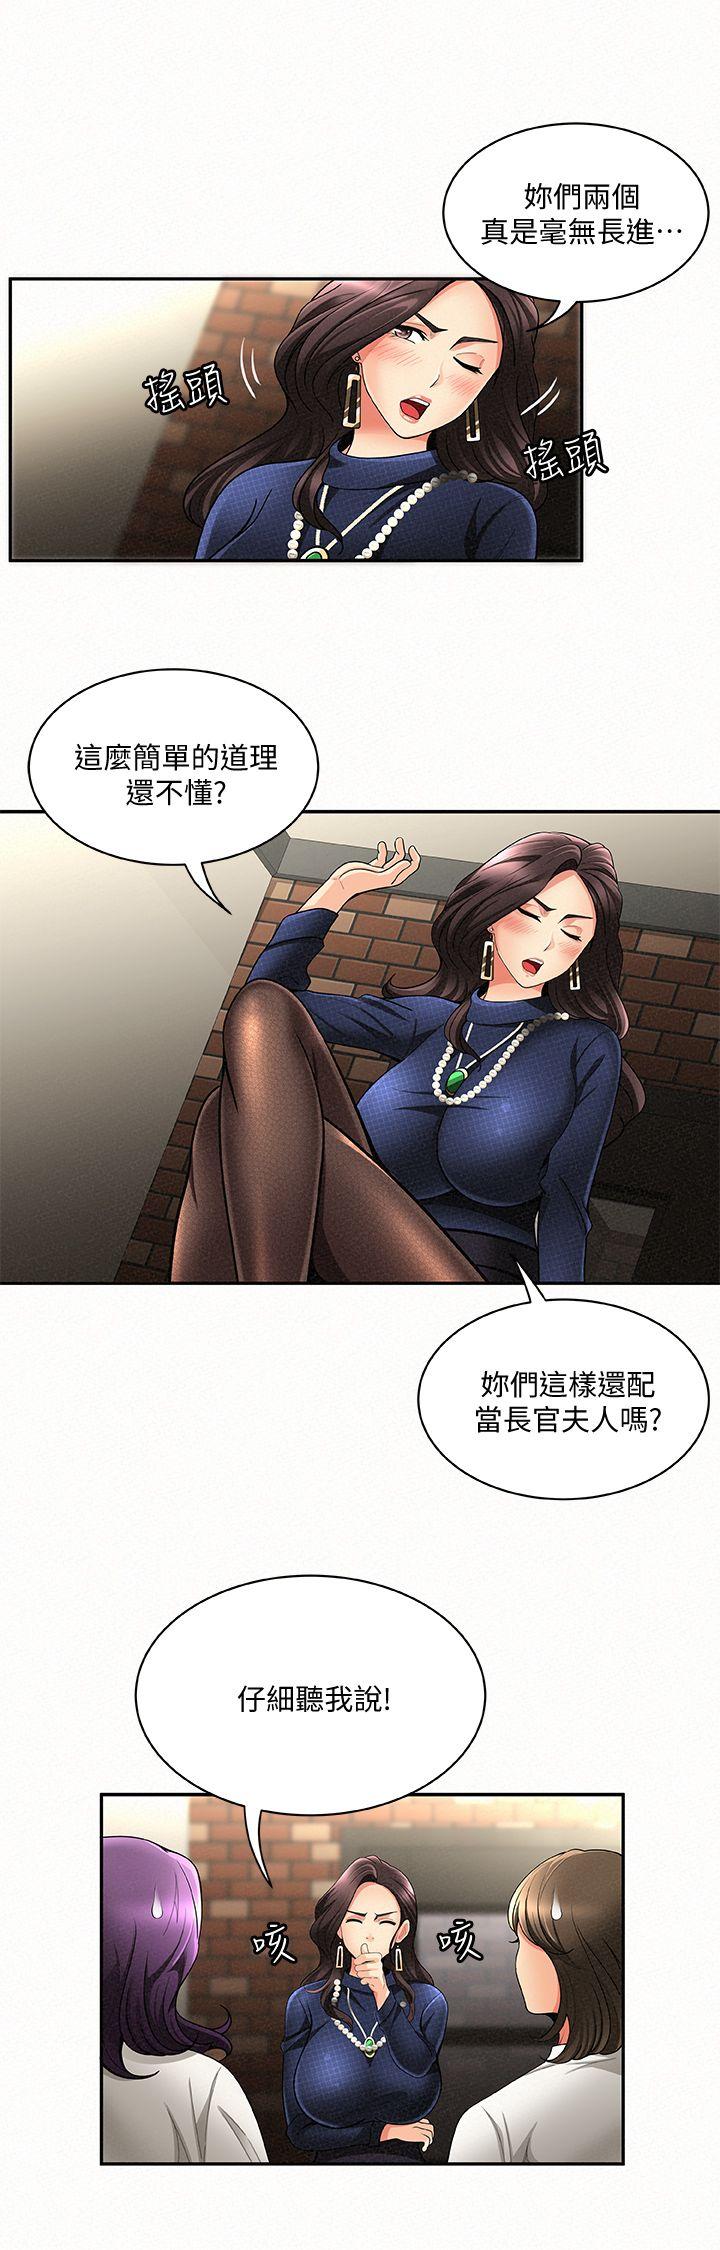 韩国污漫画 報告夫人 第3话-想不想嚐嚐其他有夫之妇? 14